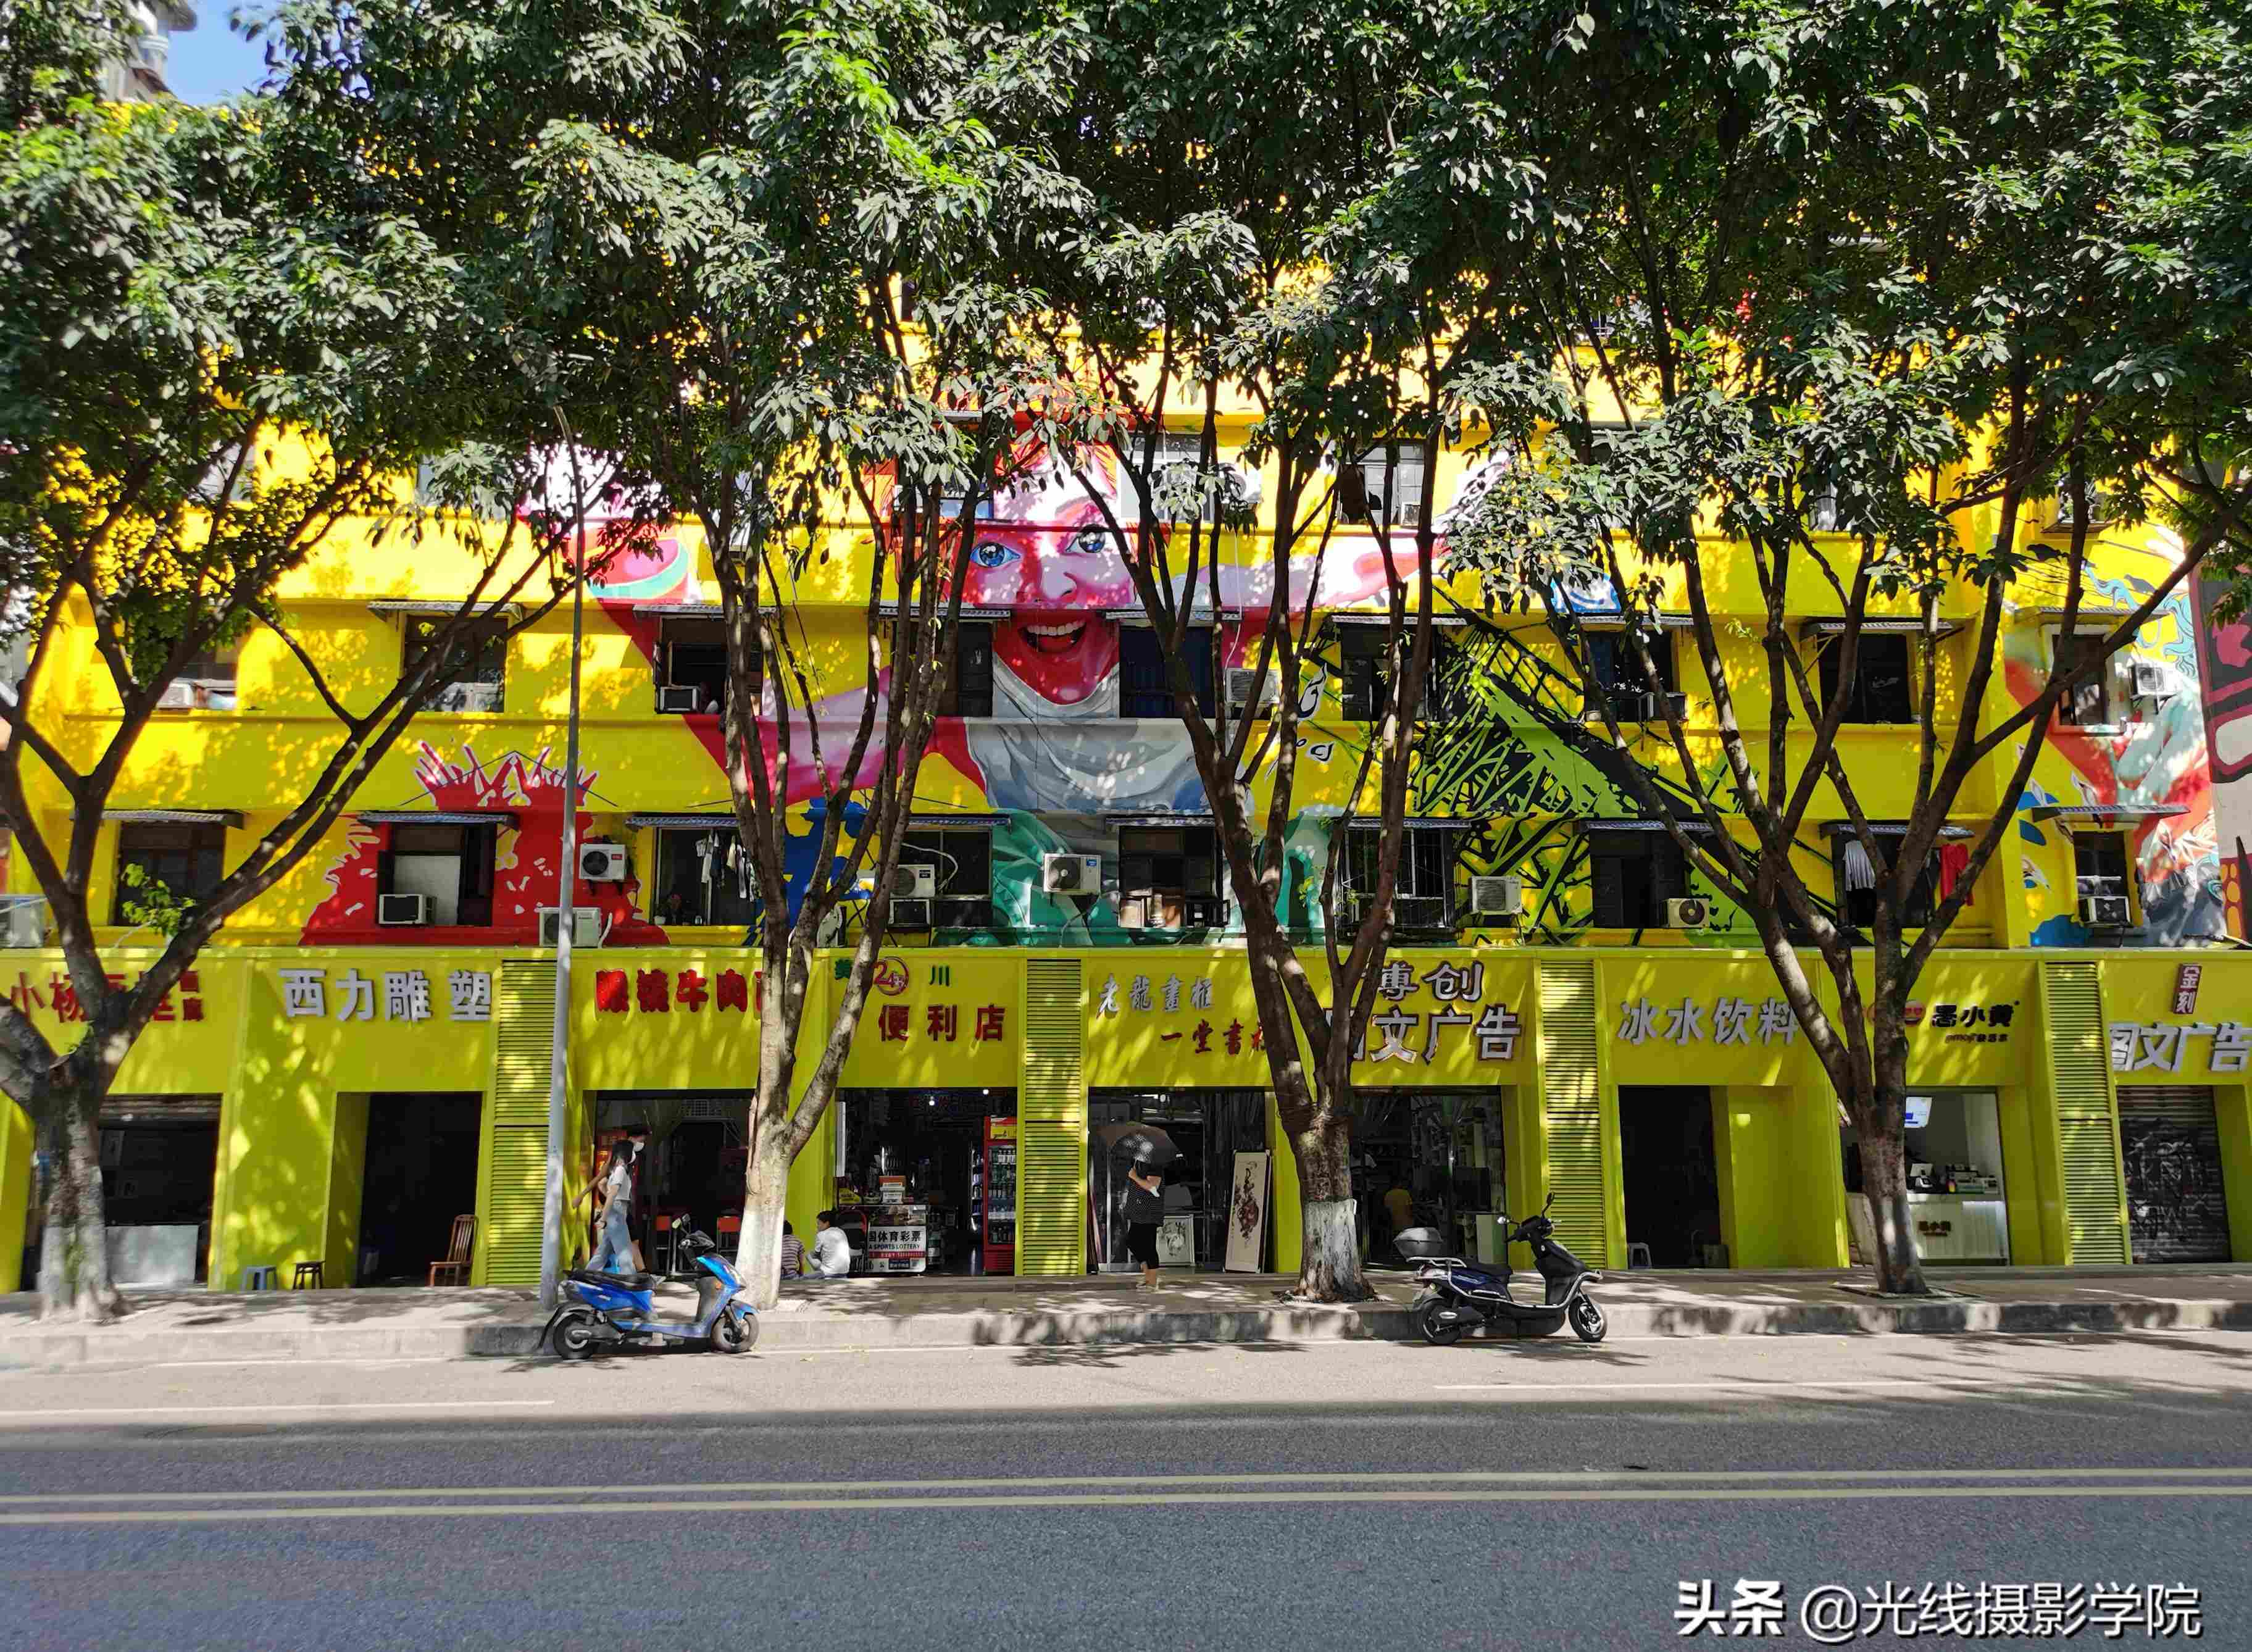 你去过吗？中国最大的涂鸦艺术街区—重庆黄角坪川美涂鸦一条街